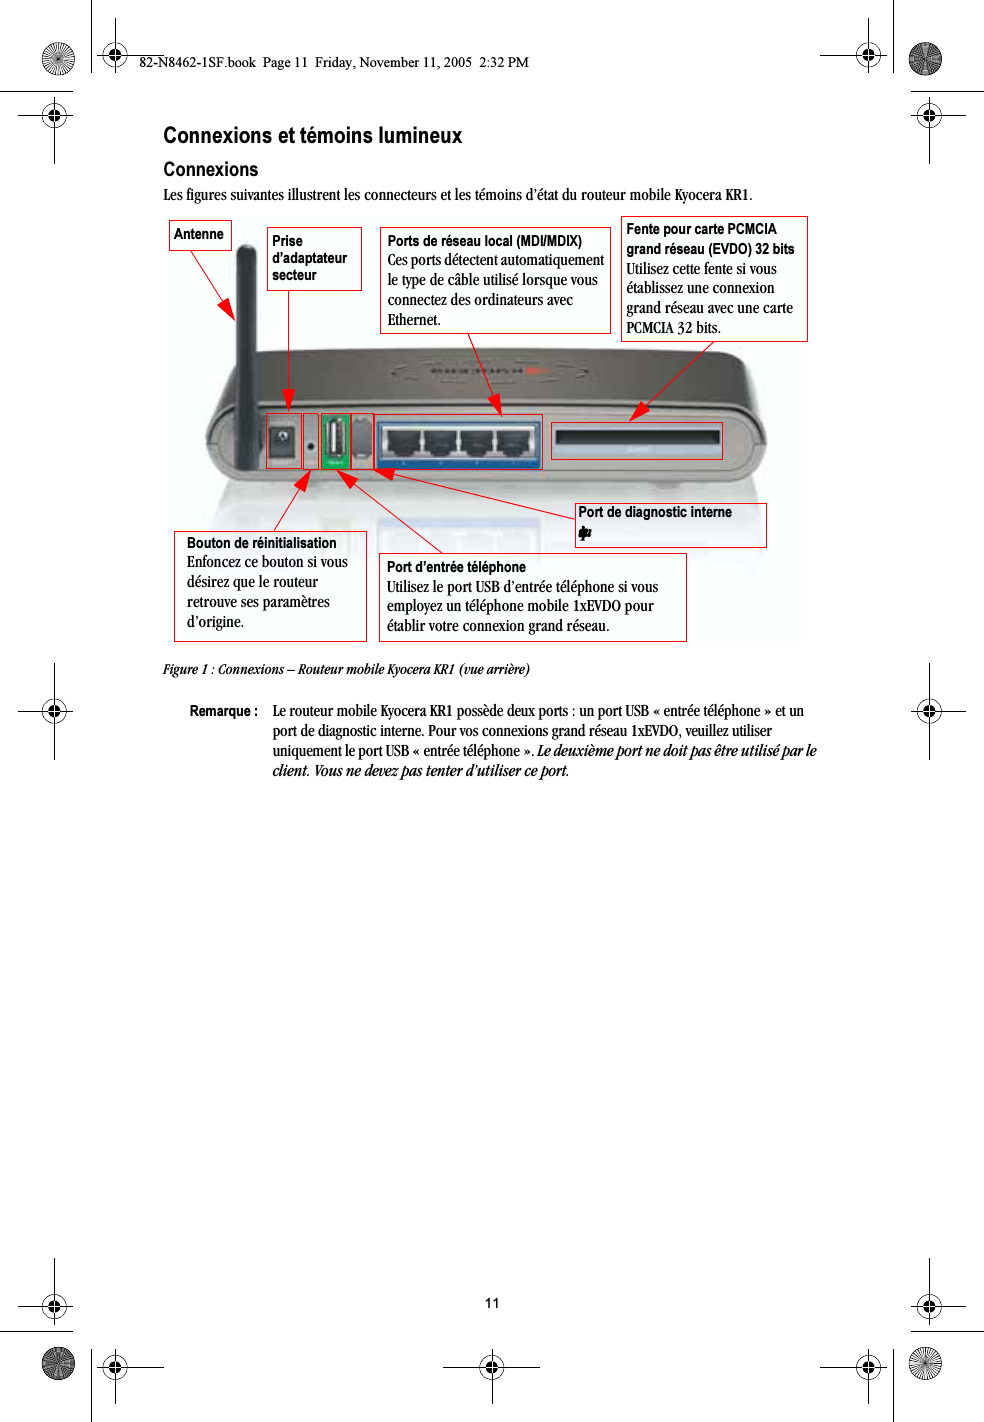 11Connexions et témoins lumineuxConnexionsLes figures suivantes illustrent les connecteurs et les témoins d’état du routeur mobile Kyocera KR1.Figure 1 : Connexions – Routeur mobile Kyocera KR1 (vue arrière)Remarque : Le routeur mobile Kyocera KR1 possède deux ports : un port USB « entrée téléphone » et un port de diagnostic interne. Pour vos connexions grand réseau 1xEVDO, veuillez utiliser uniquement le port USB « entrée téléphone ». Le deuxième port ne doit pas être utilisé par le client. Vous ne devez pas tenter d’utiliser ce port.Ports de réseau local (MDI/MDIX)Ces ports détectent automatiquement le type de câble utilisé lorsque vous connectez des ordinateurs avec Ethernet.Prise d’adaptateur secteur Bouton de réinitialisationEnfoncez ce bouton si vous désirez que le routeur retrouve ses paramètres d’origine.Port d’entrée téléphoneUtilisez le port USB d’entrée téléphone si vous employez un téléphone mobile 1xEVDO pour établir votre connexion grand réseau.Antenne Fente pour carte PCMCIA grand réseau (EVDO) 32 bitsUtilisez cette fente si vous établissez une connexion grand réseau avec une carte PCMCIA 32 bits.Port de diagnostic interne=ìåáèìÉãÉåí82-N8462-1SF.book  Page 11  Friday, November 11, 2005  2:32 PM